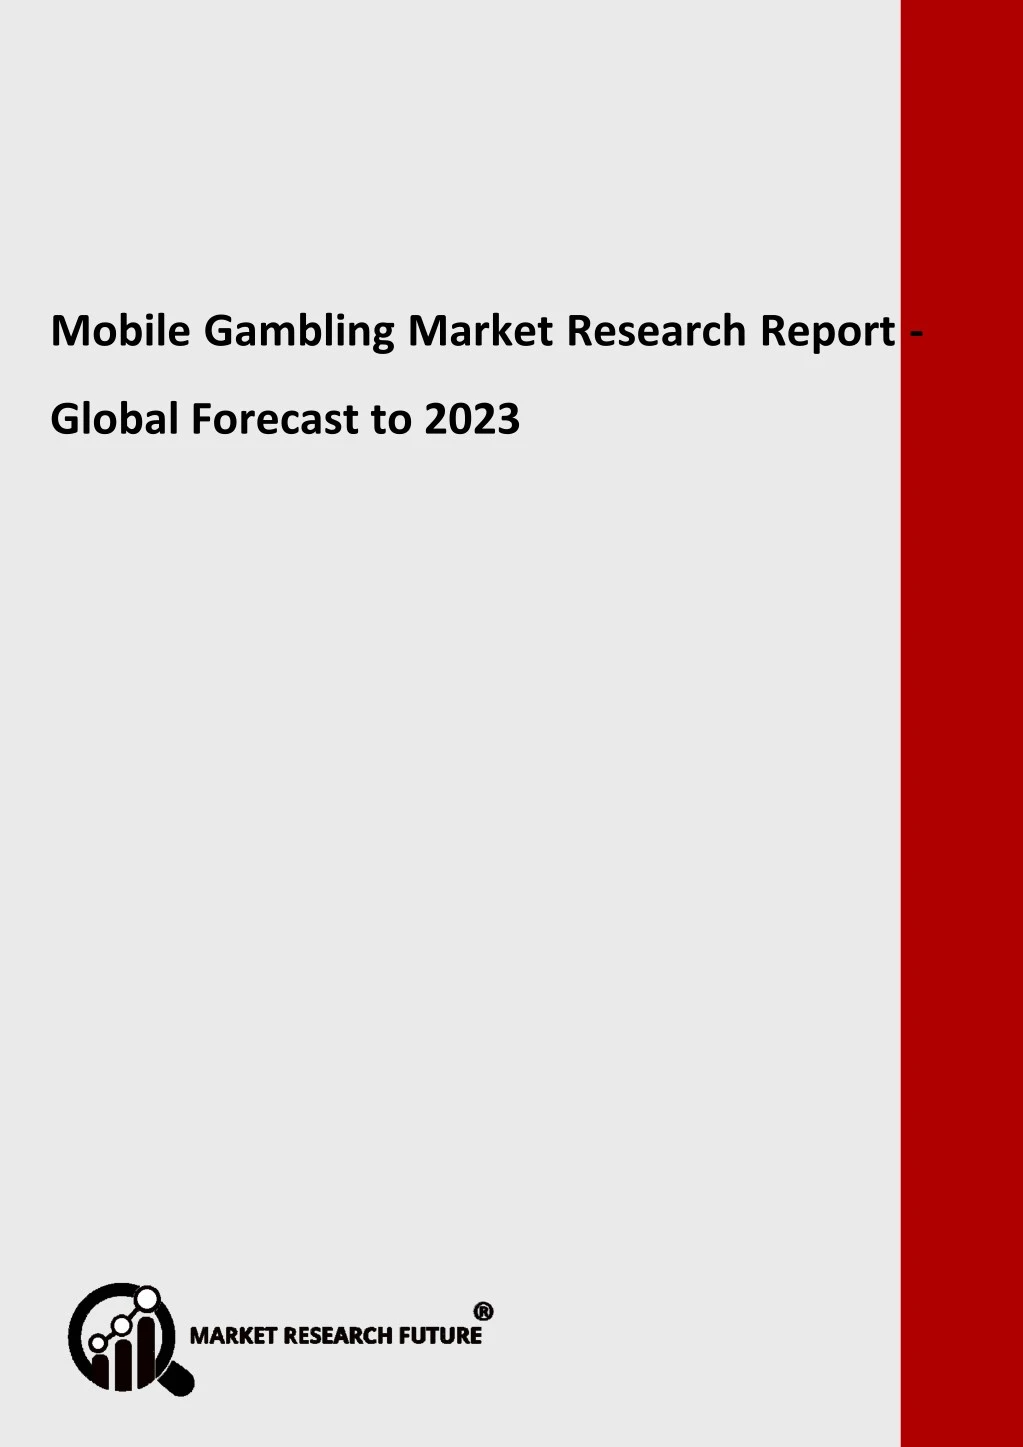 mobile gambling market research report global